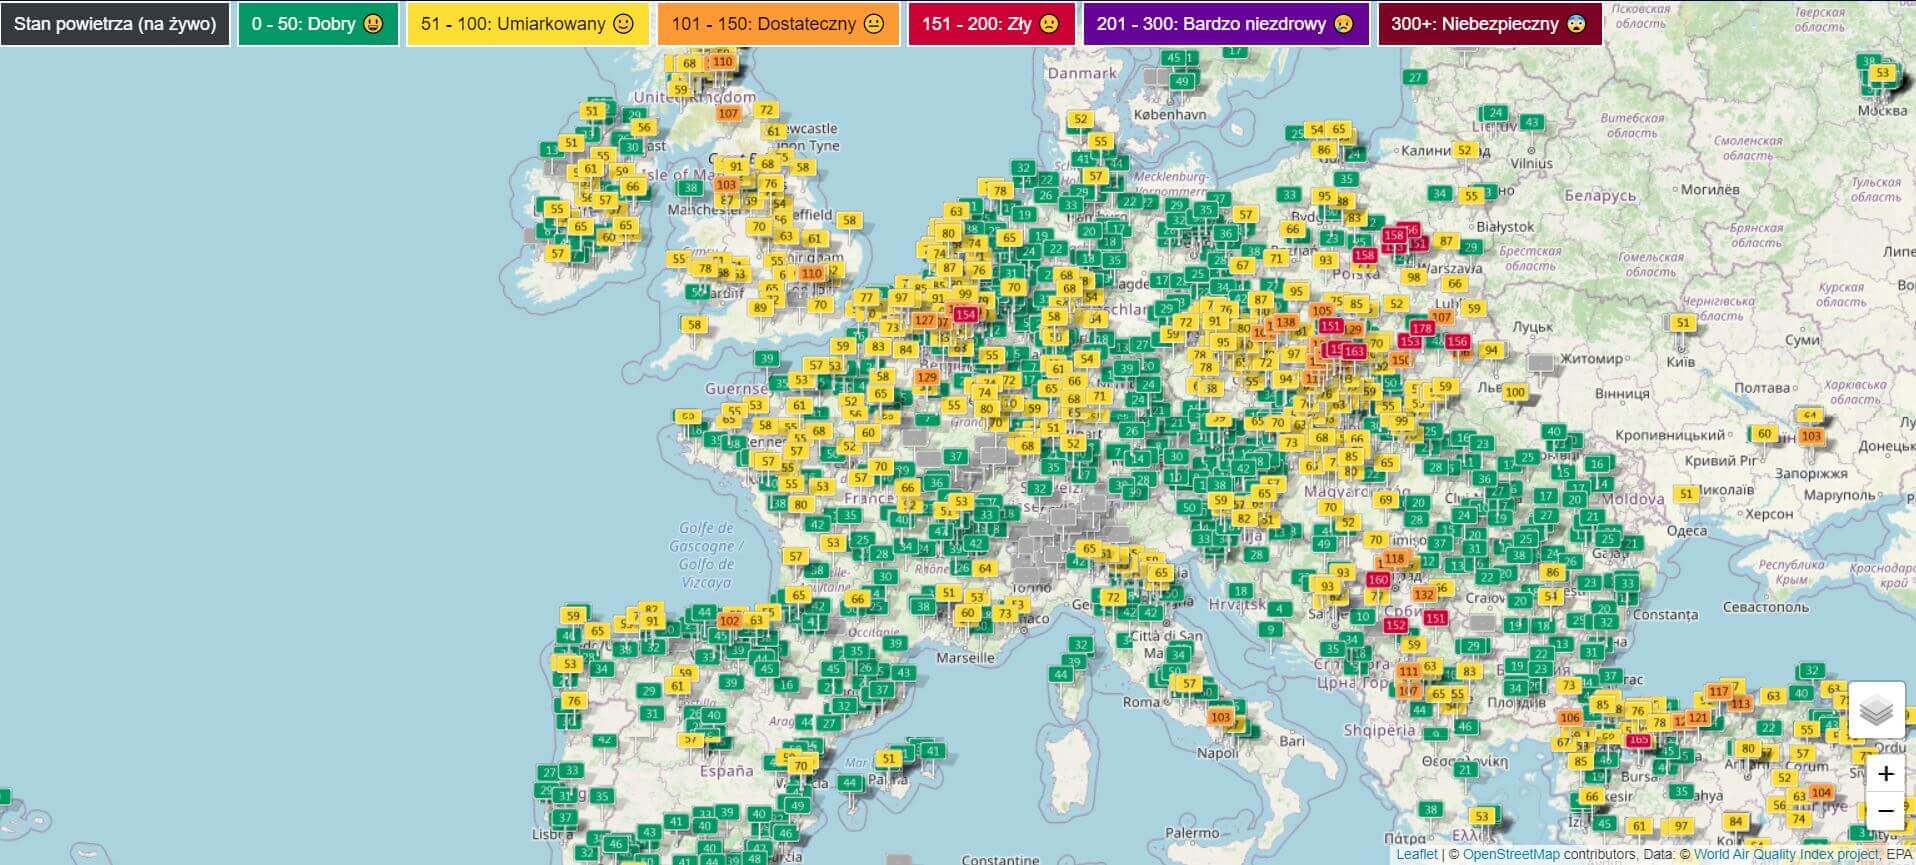 Mapa jakości powietrza w Polsce na tle Europy